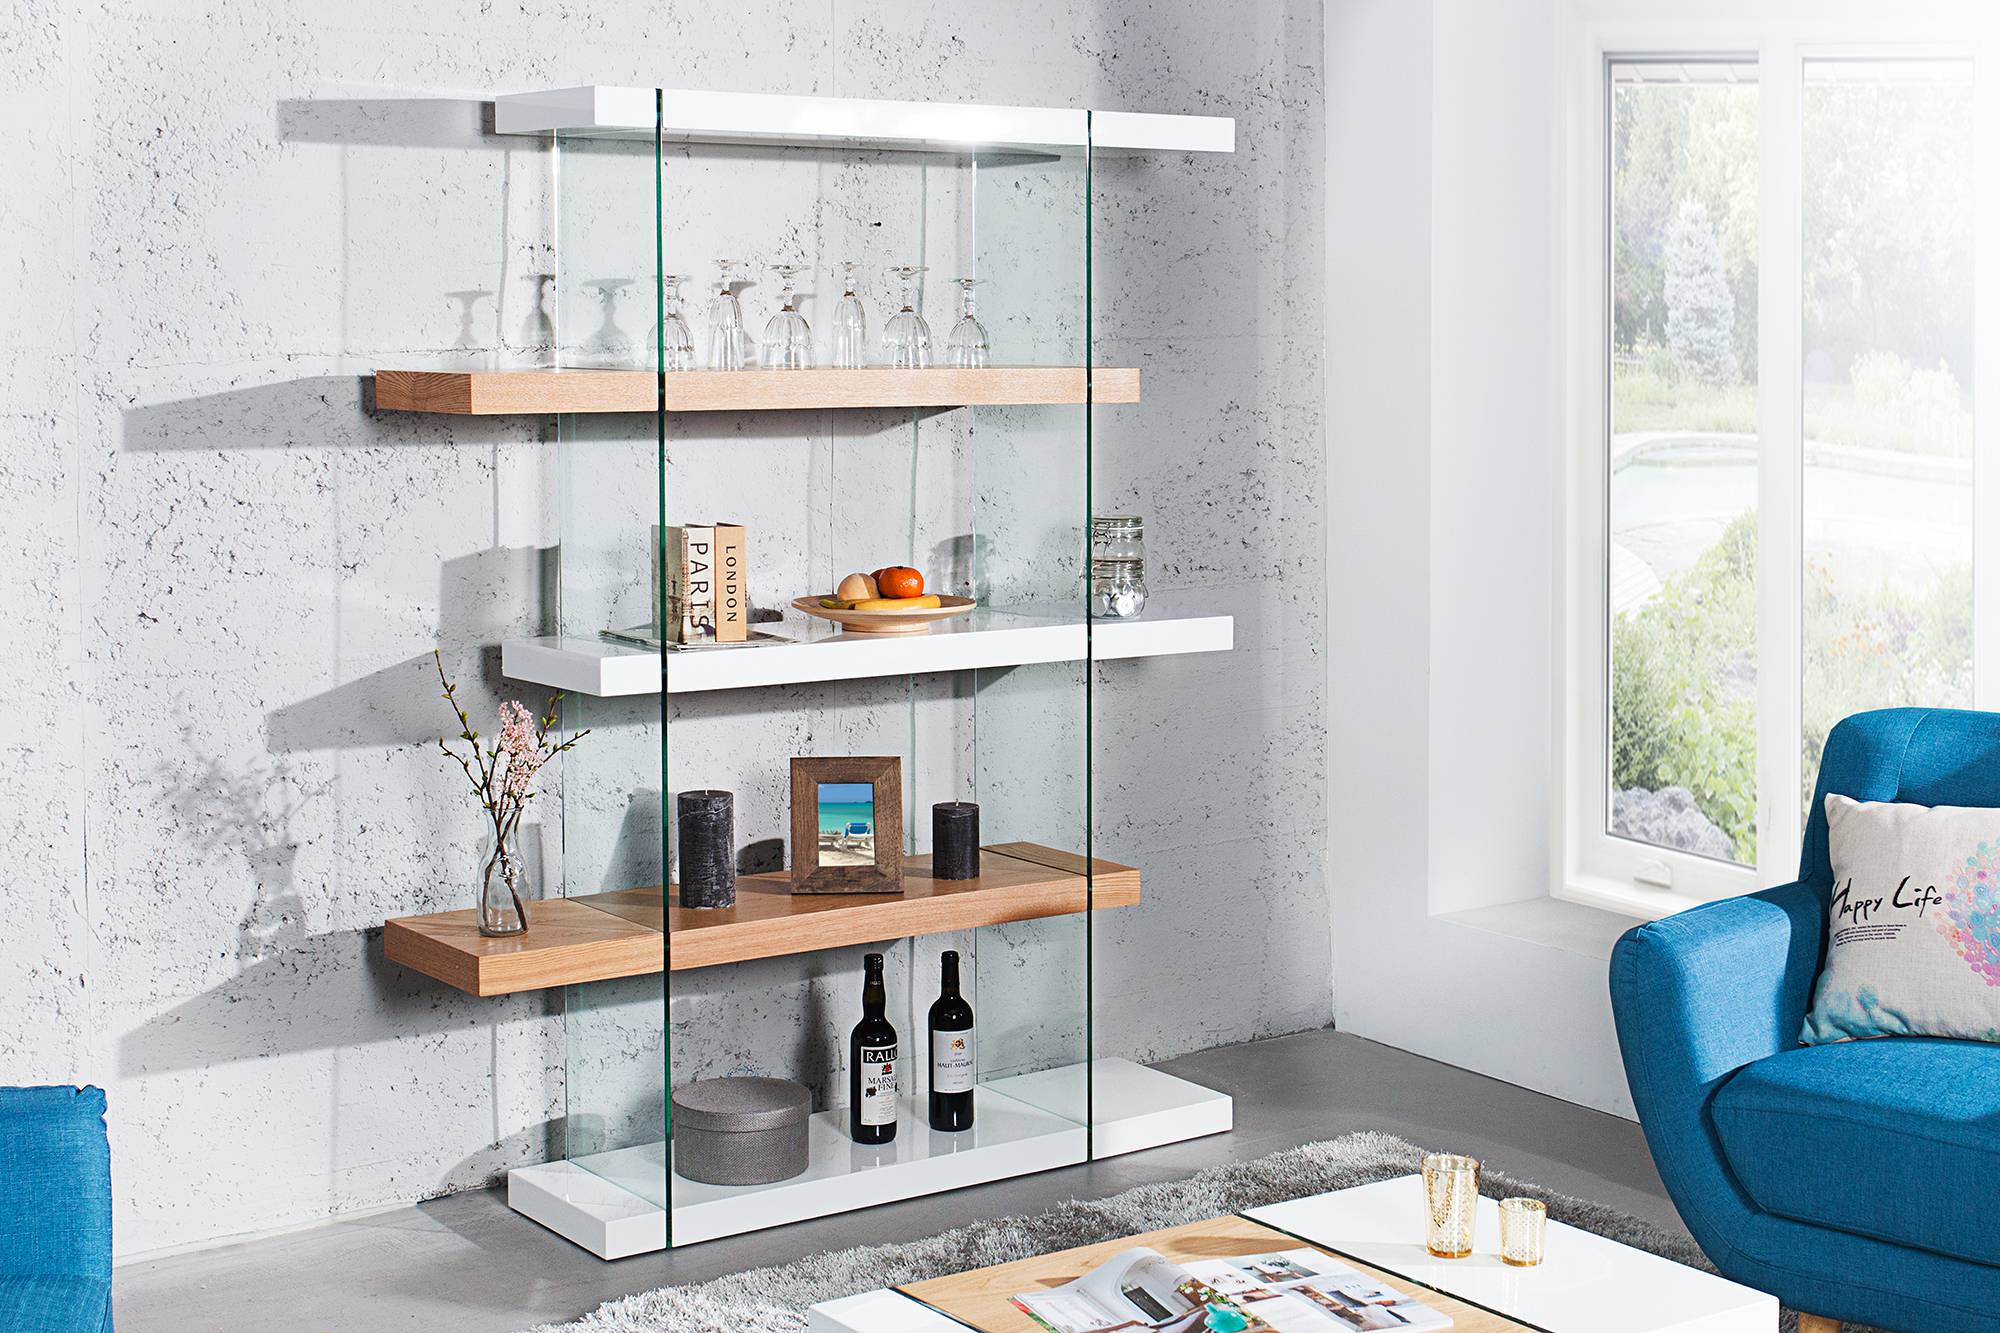 Představujeme Vám moderné bydlení s naším vysoce kvalitním dizajnovým nábytkem ze série Livid. Tvar a spracování jsou dokonale zladěné s vysoce kvalitními materiáy skla a lesklé pravé dubové dýhy, které dodávají regálu elegantní a jediněčný nádech. V ére Bauhausu platilo motto: "Krása je založená na účelnosti". Toto tvrzení úplně vystihuje tuto dizajnovou komodu se svím bílým lesklým povrchem.